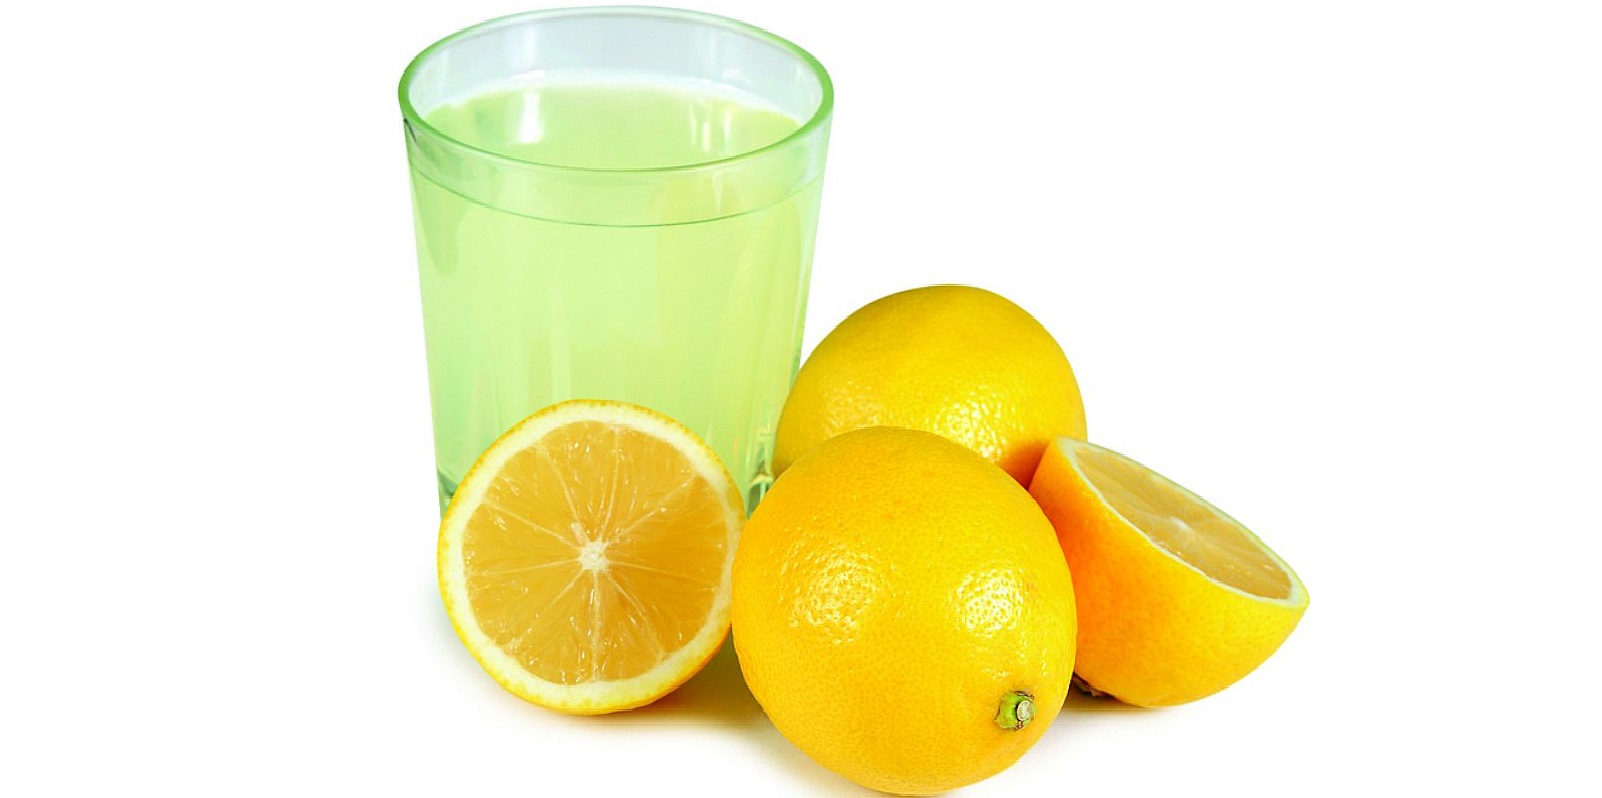 koristite sok od limuna za čišćenje